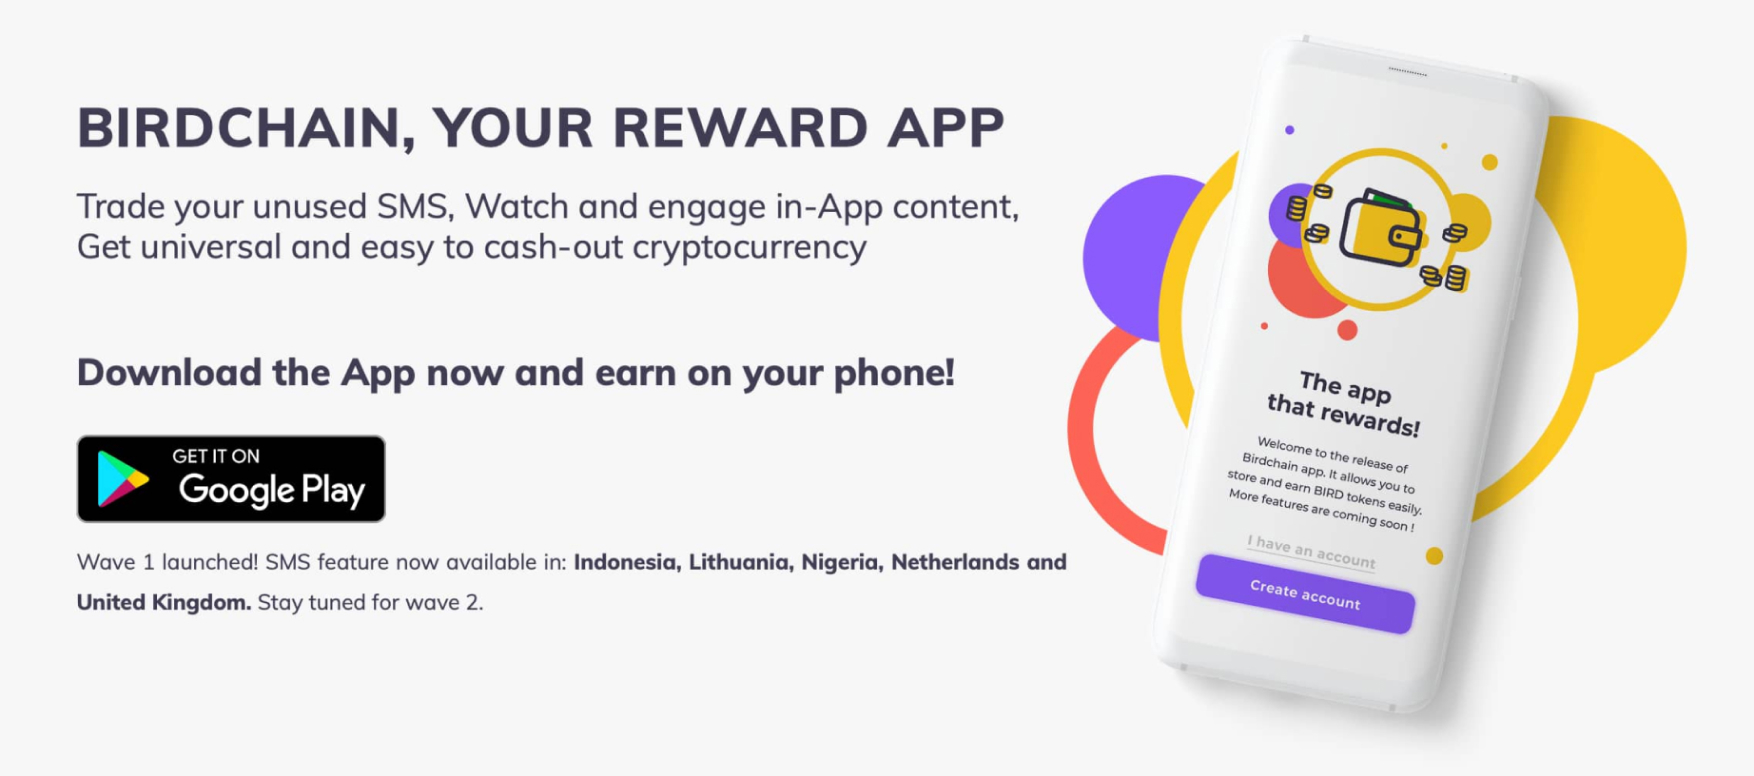 Birdchain, your reward app